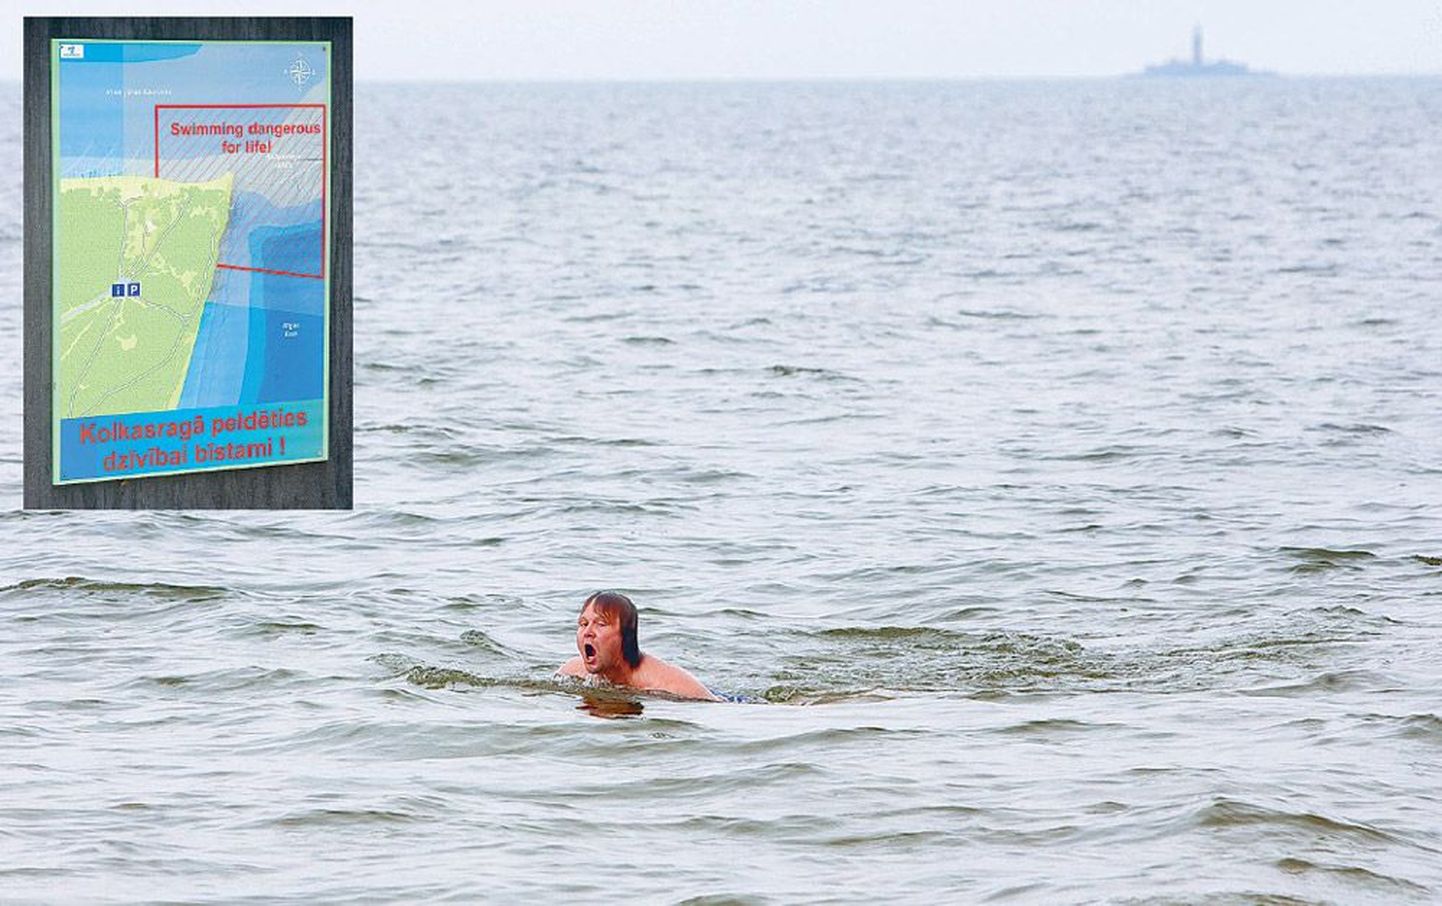 Et Liivi lahte Läänemerest eraldava Kolka neeme tipus on ujumine eluohtlik, avastas reporter Nils Niitra alles rannast lahkudes, kui hoiatussildi otsa sattus.